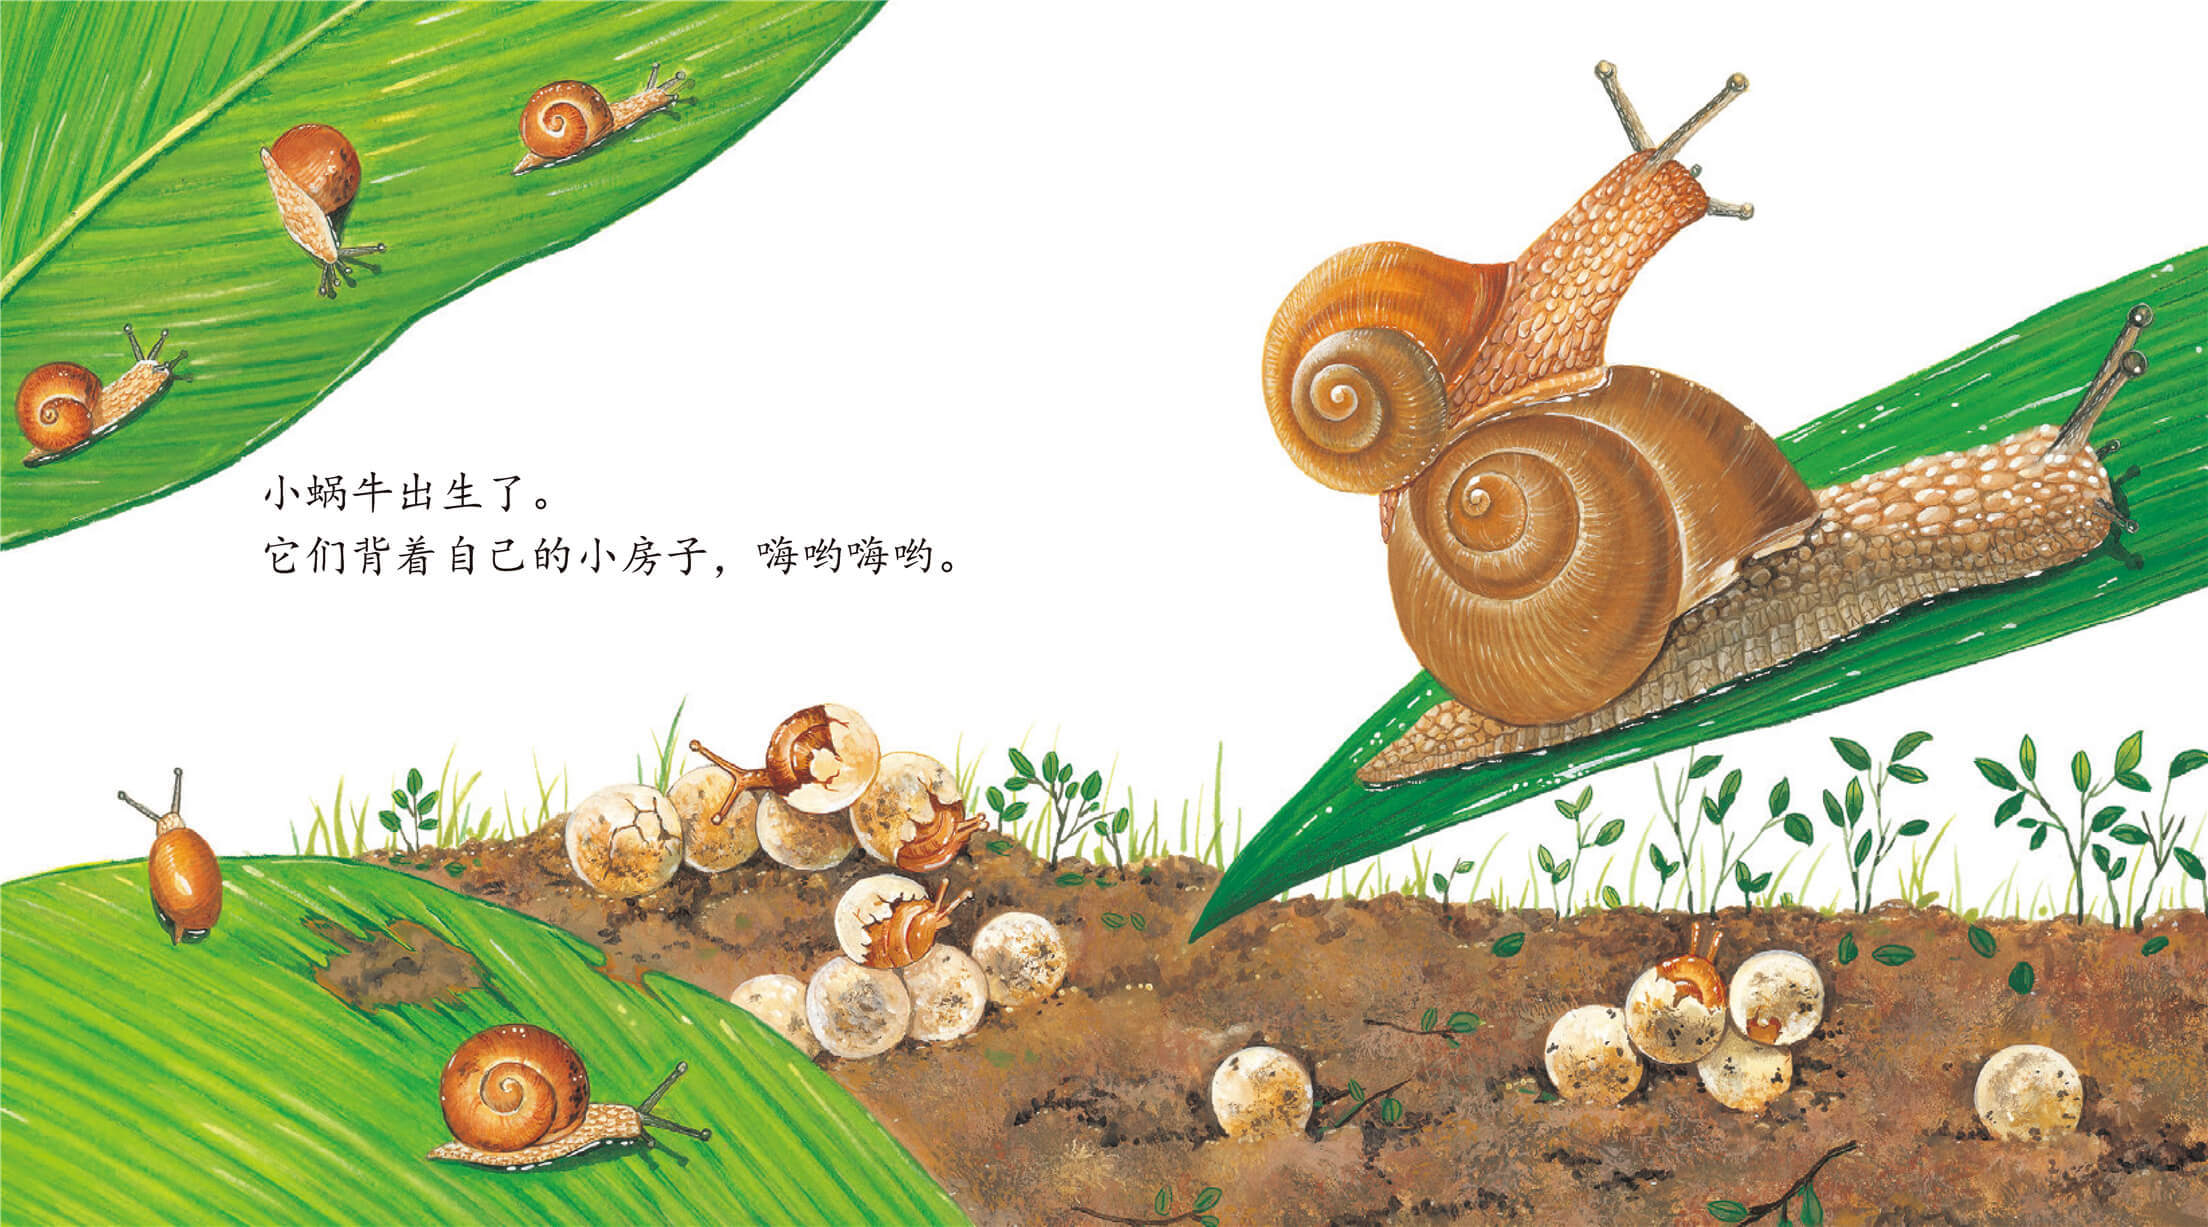 蜗牛 绘本故事《蜗牛》到这里就结束了,本绘本故事由[小孩子点读]app